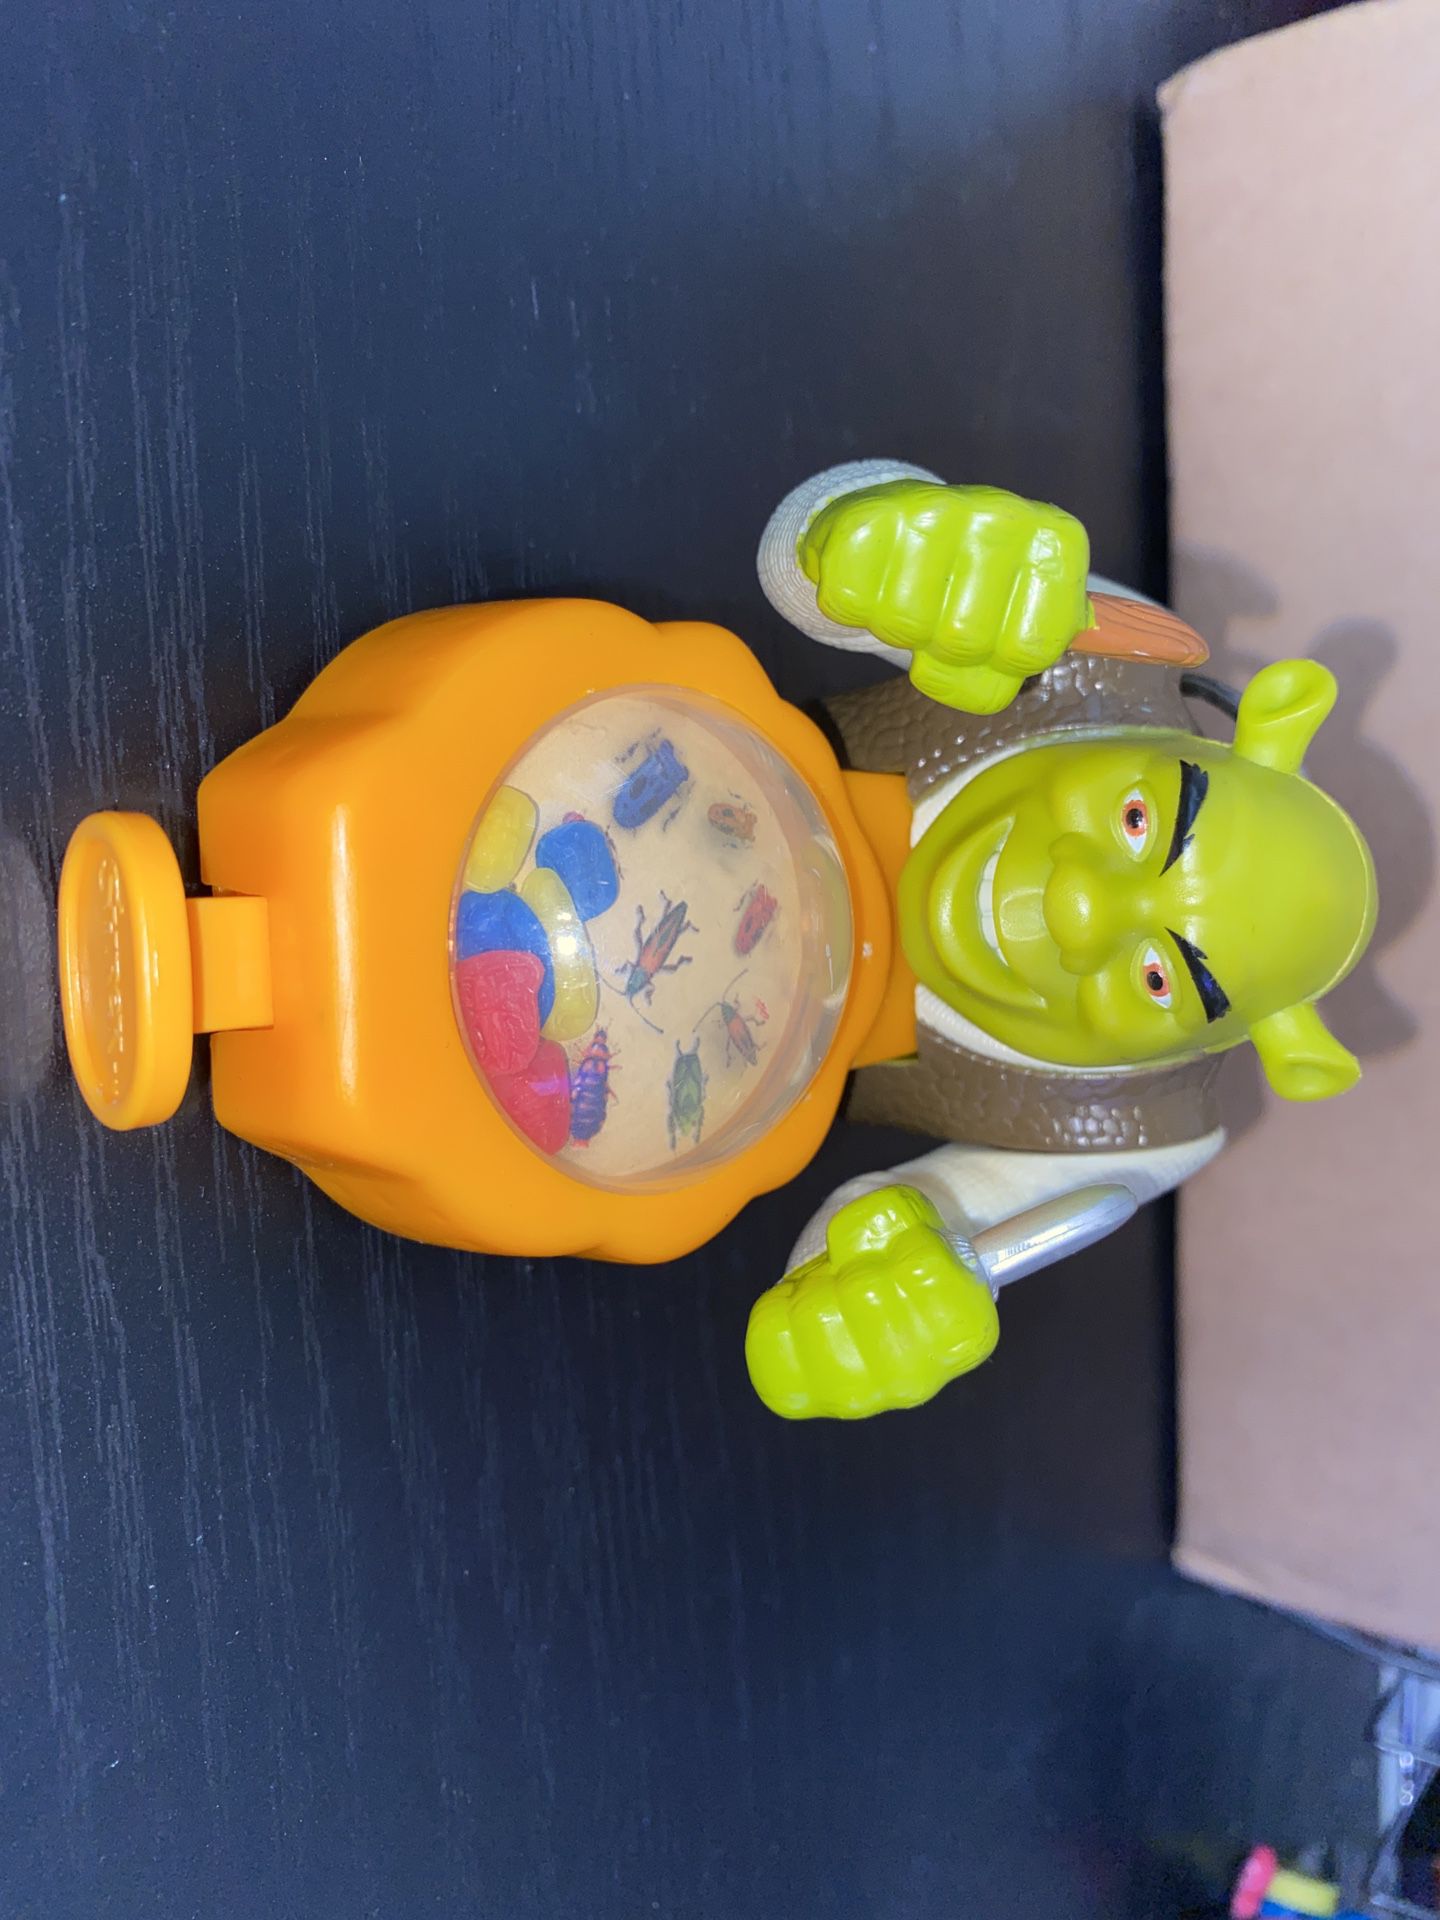 Burger King Shrek Shrek Pop Up Picnic #9 2001BX24 